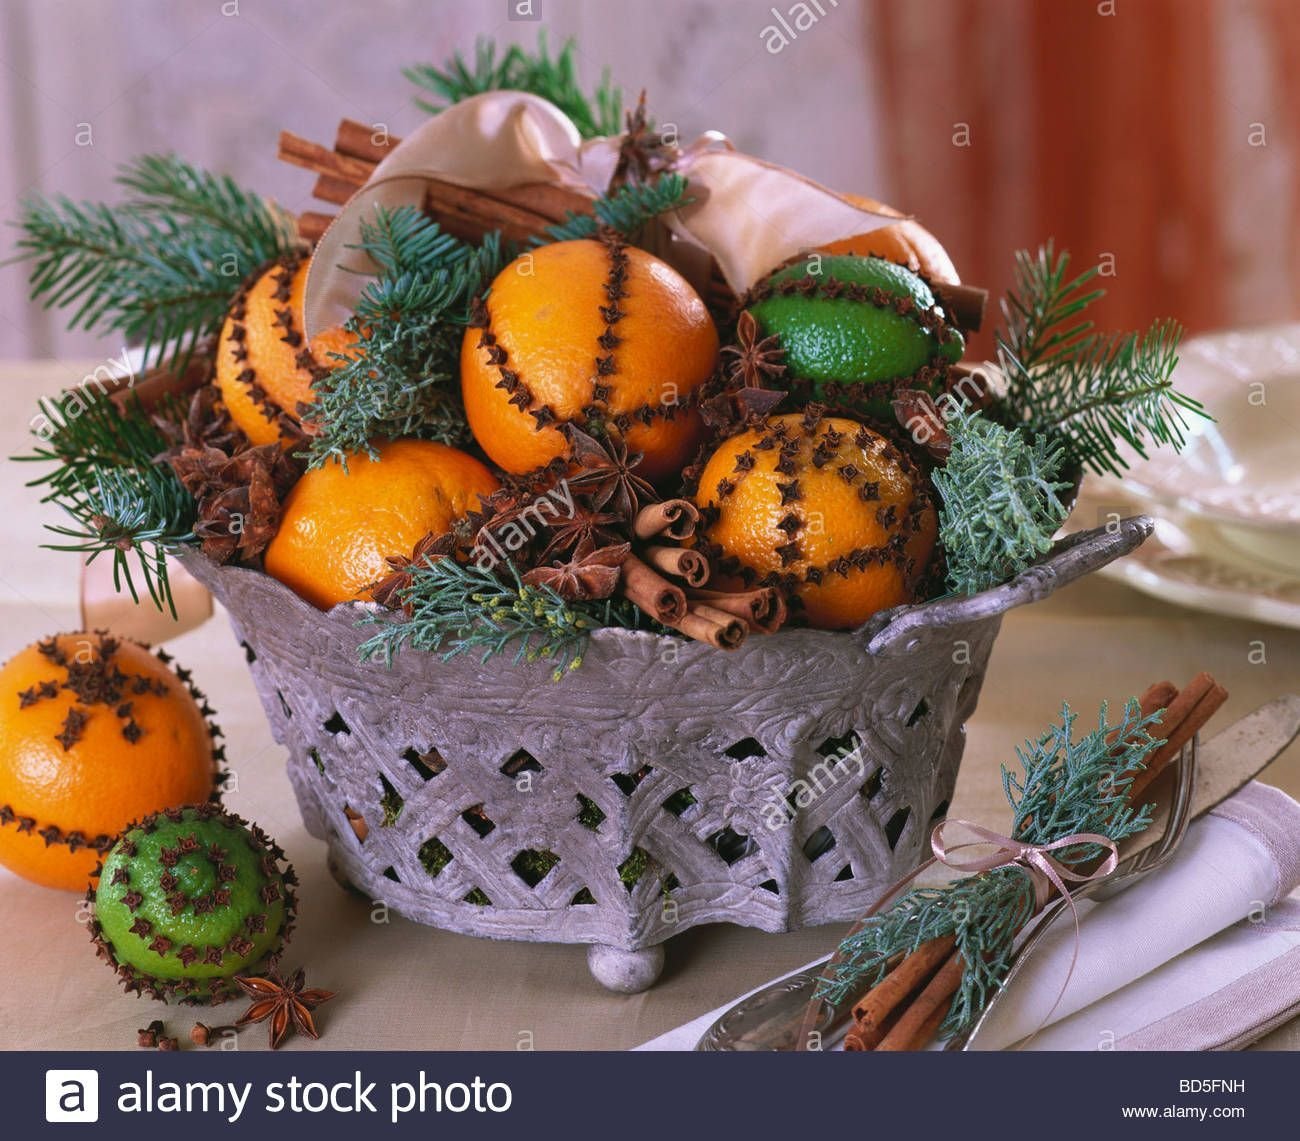 Новый год подарки мандарины. Композиция с апельсинами. Новогодний декор с мандаринами. Украсить мандарины на новый год. Композиция из мандарин.